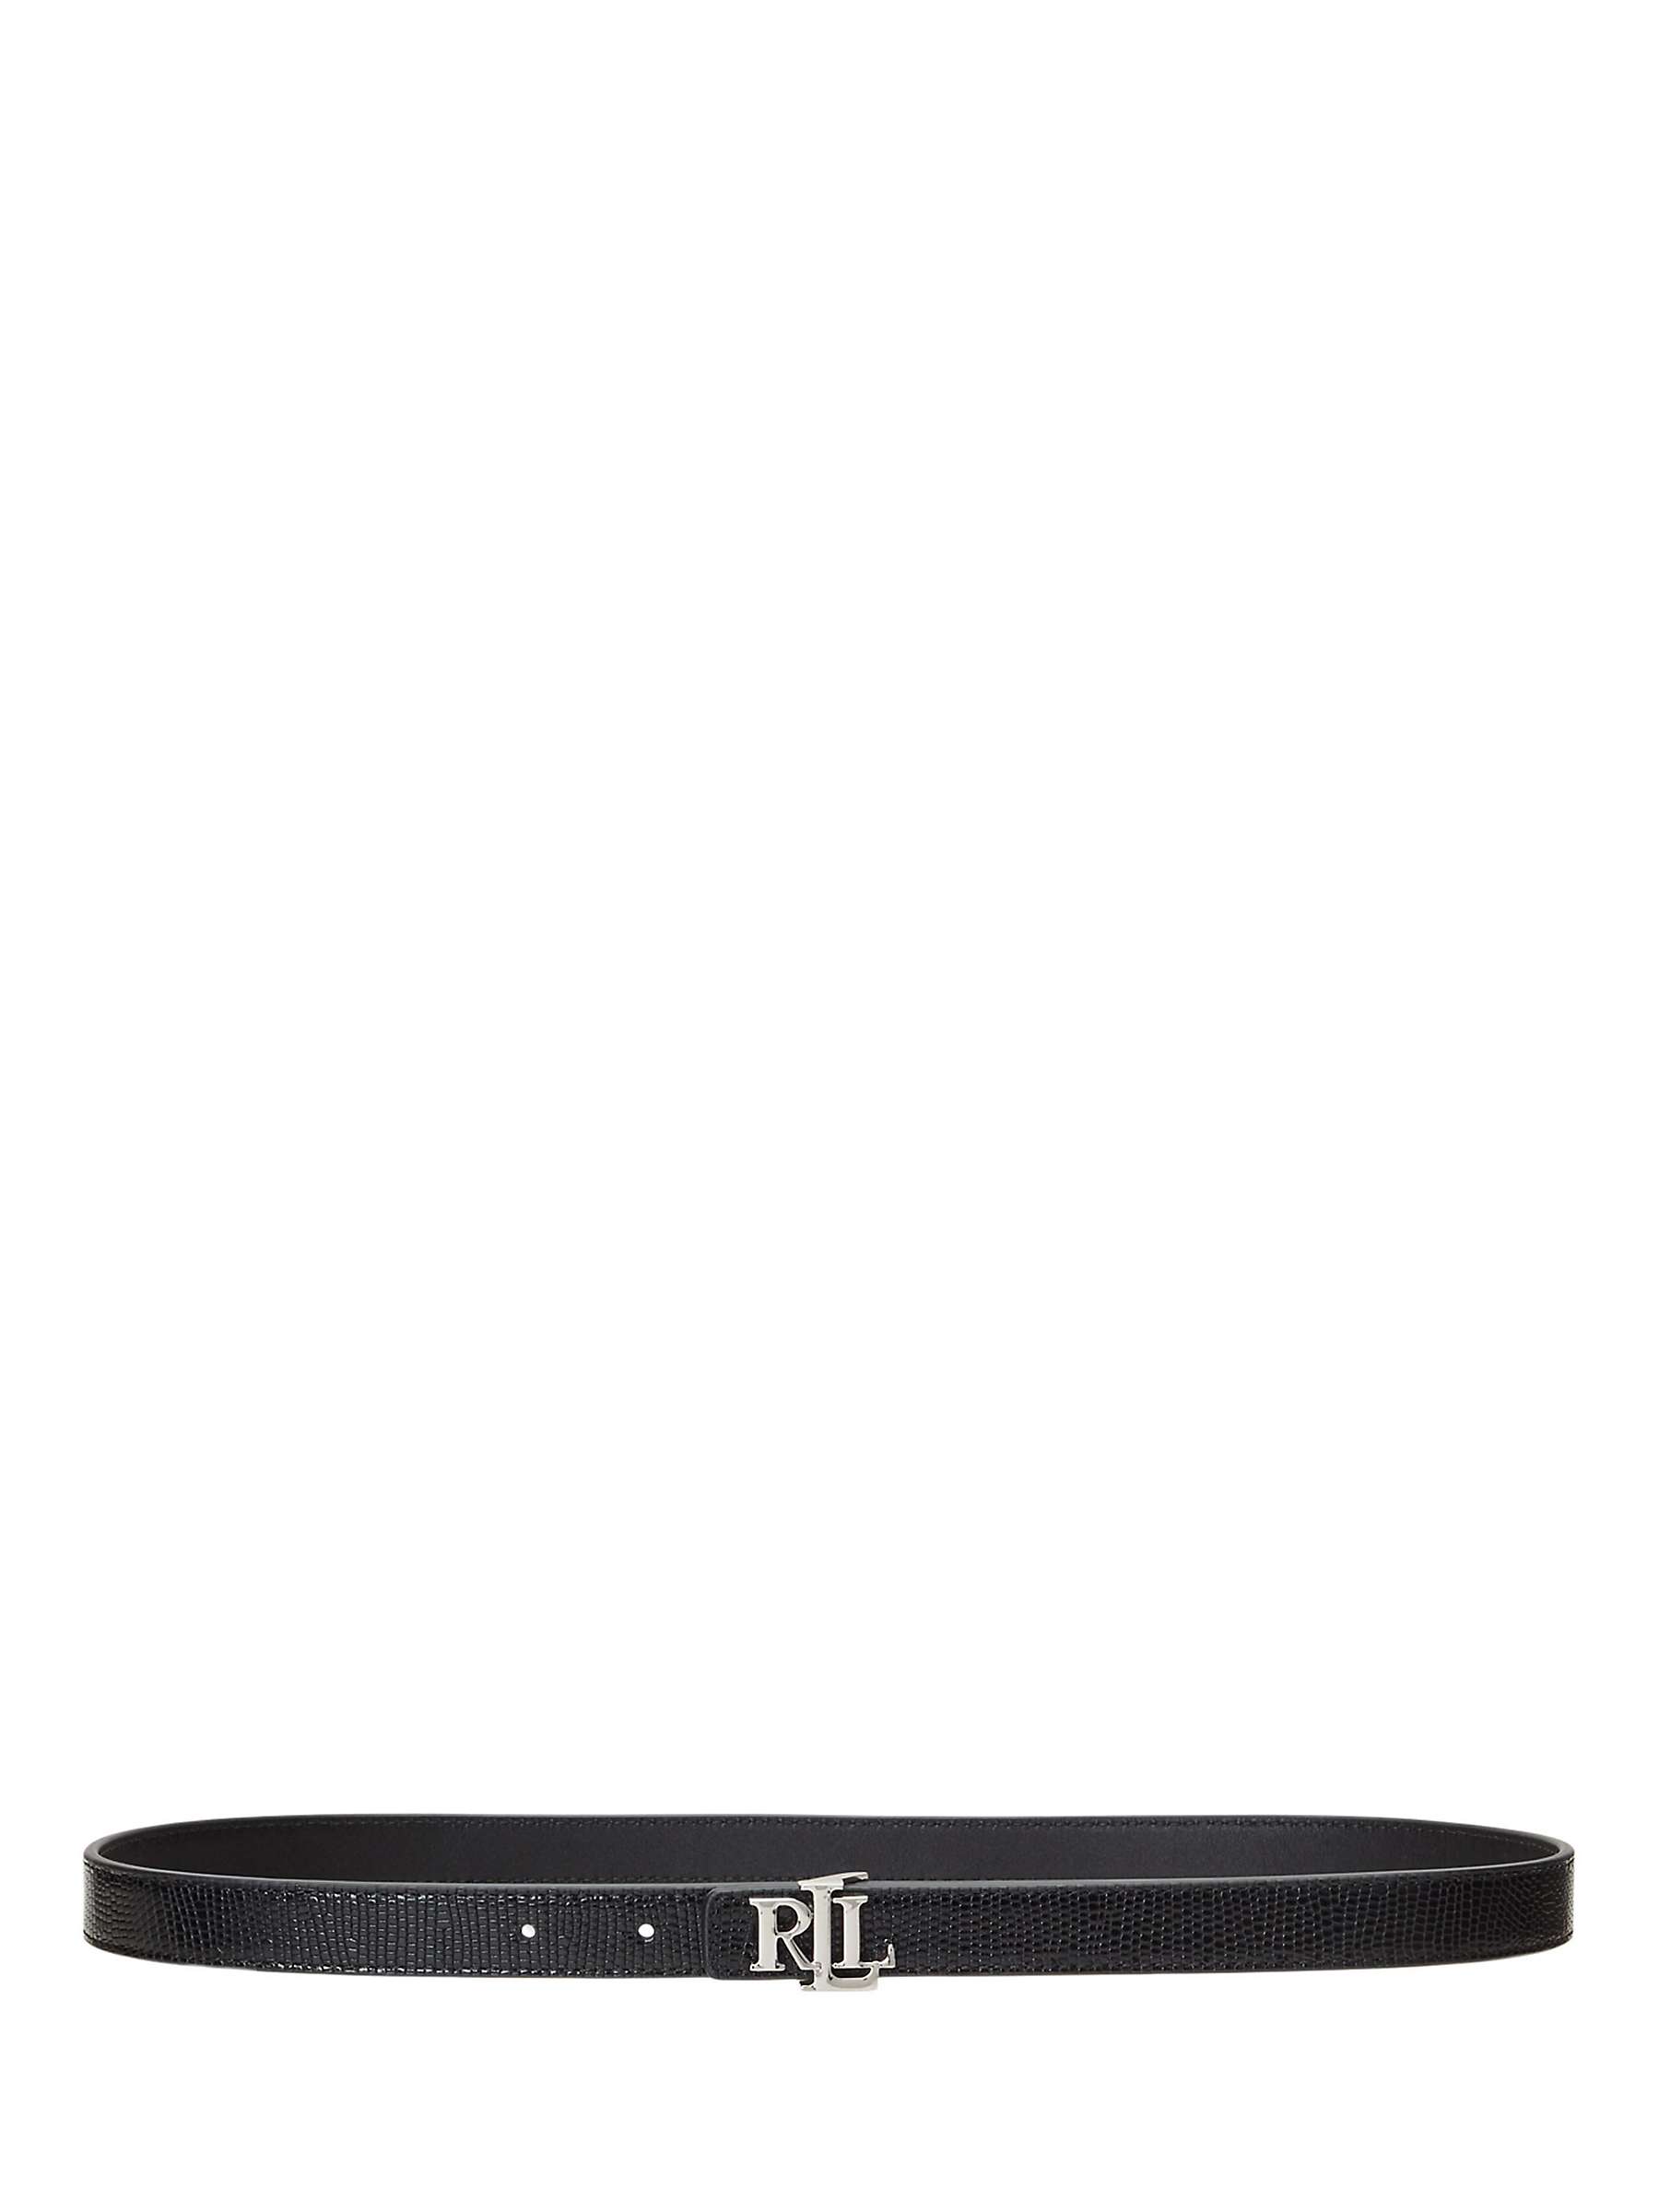 Buy Lauren Ralph Lauren Lizard Texture Reversible Leather Skinny Belt, Black/Black Online at johnlewis.com